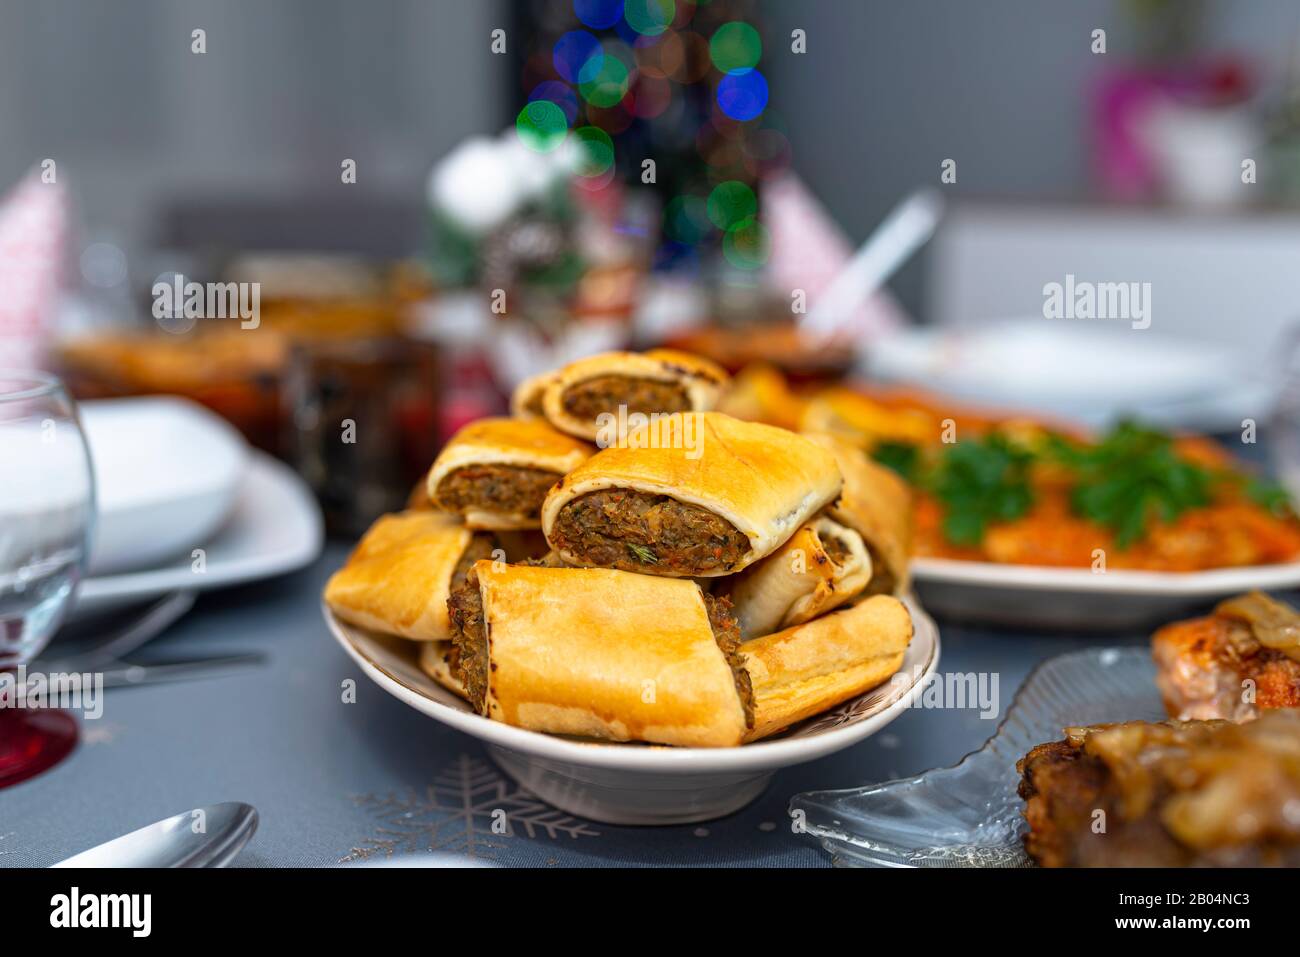 Gebackene Pate in einer Pastete, die auf einem Ferientisch auf einem Teller liegt. Stockfoto